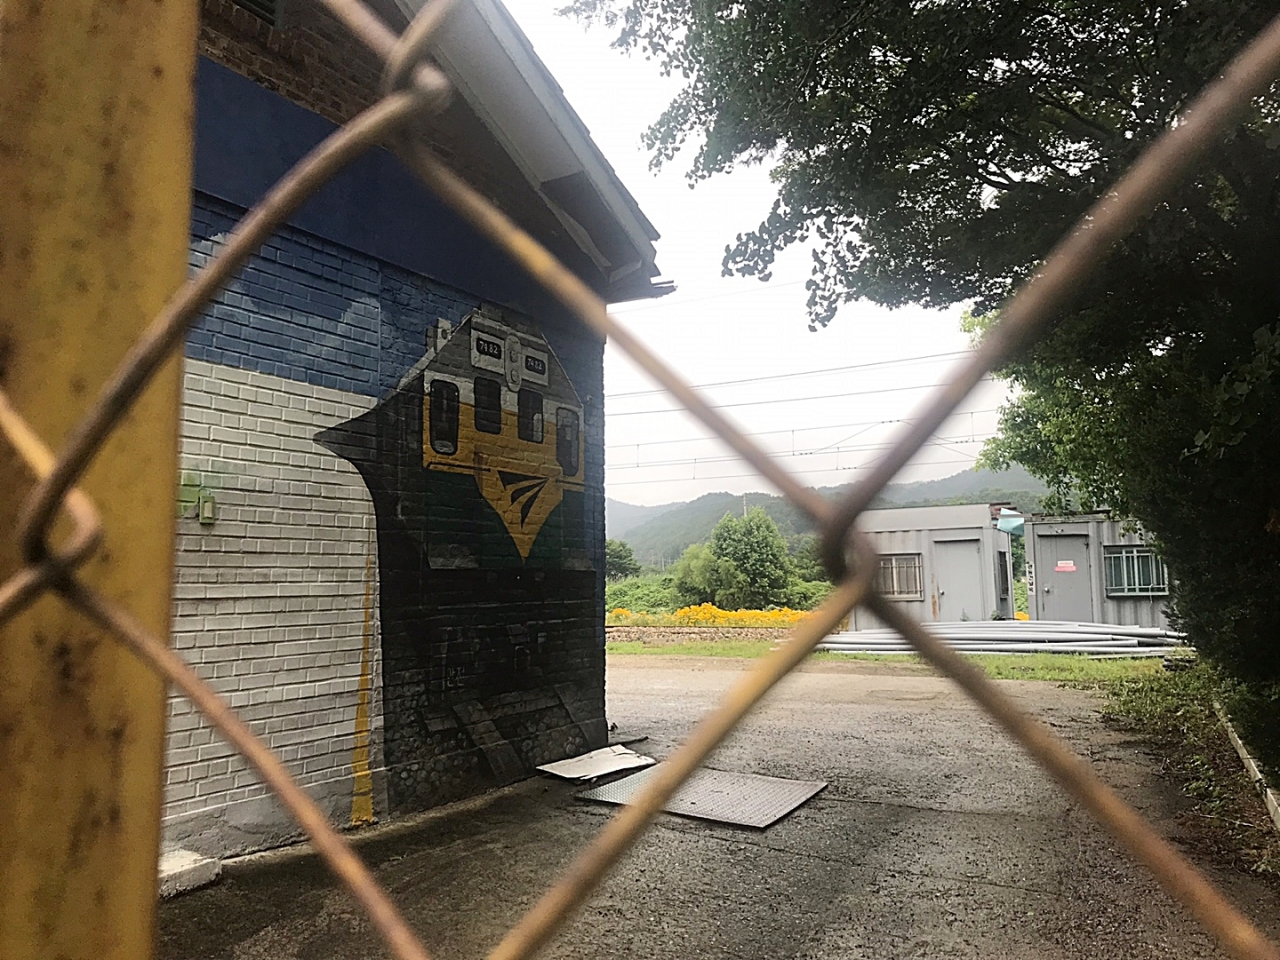 폐역 원정역 내부 모습. 호남선 기차는 정차 없이 이곳을 지난다. 역사 벽면에는 벽화가 그려져있고, 철문은 자물쇠로 잠겨있다.